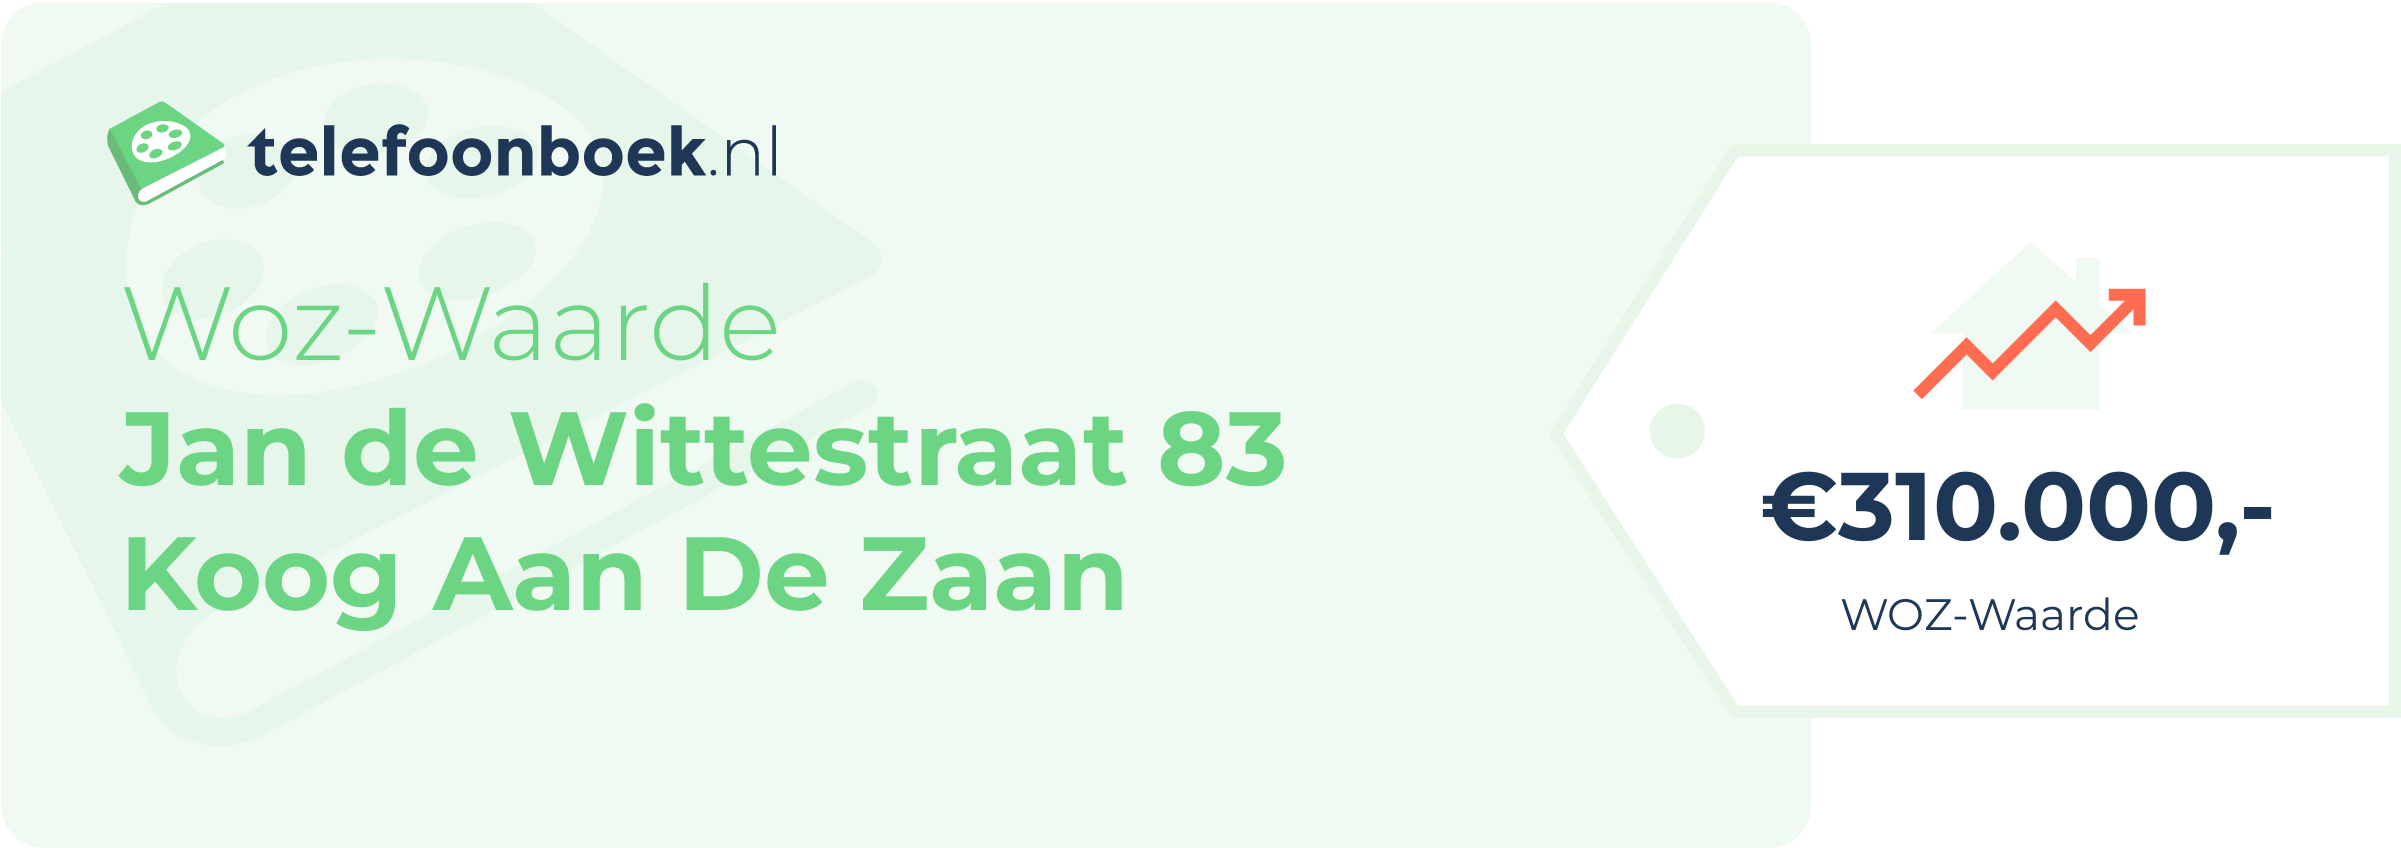 WOZ-waarde Jan De Wittestraat 83 Koog Aan De Zaan